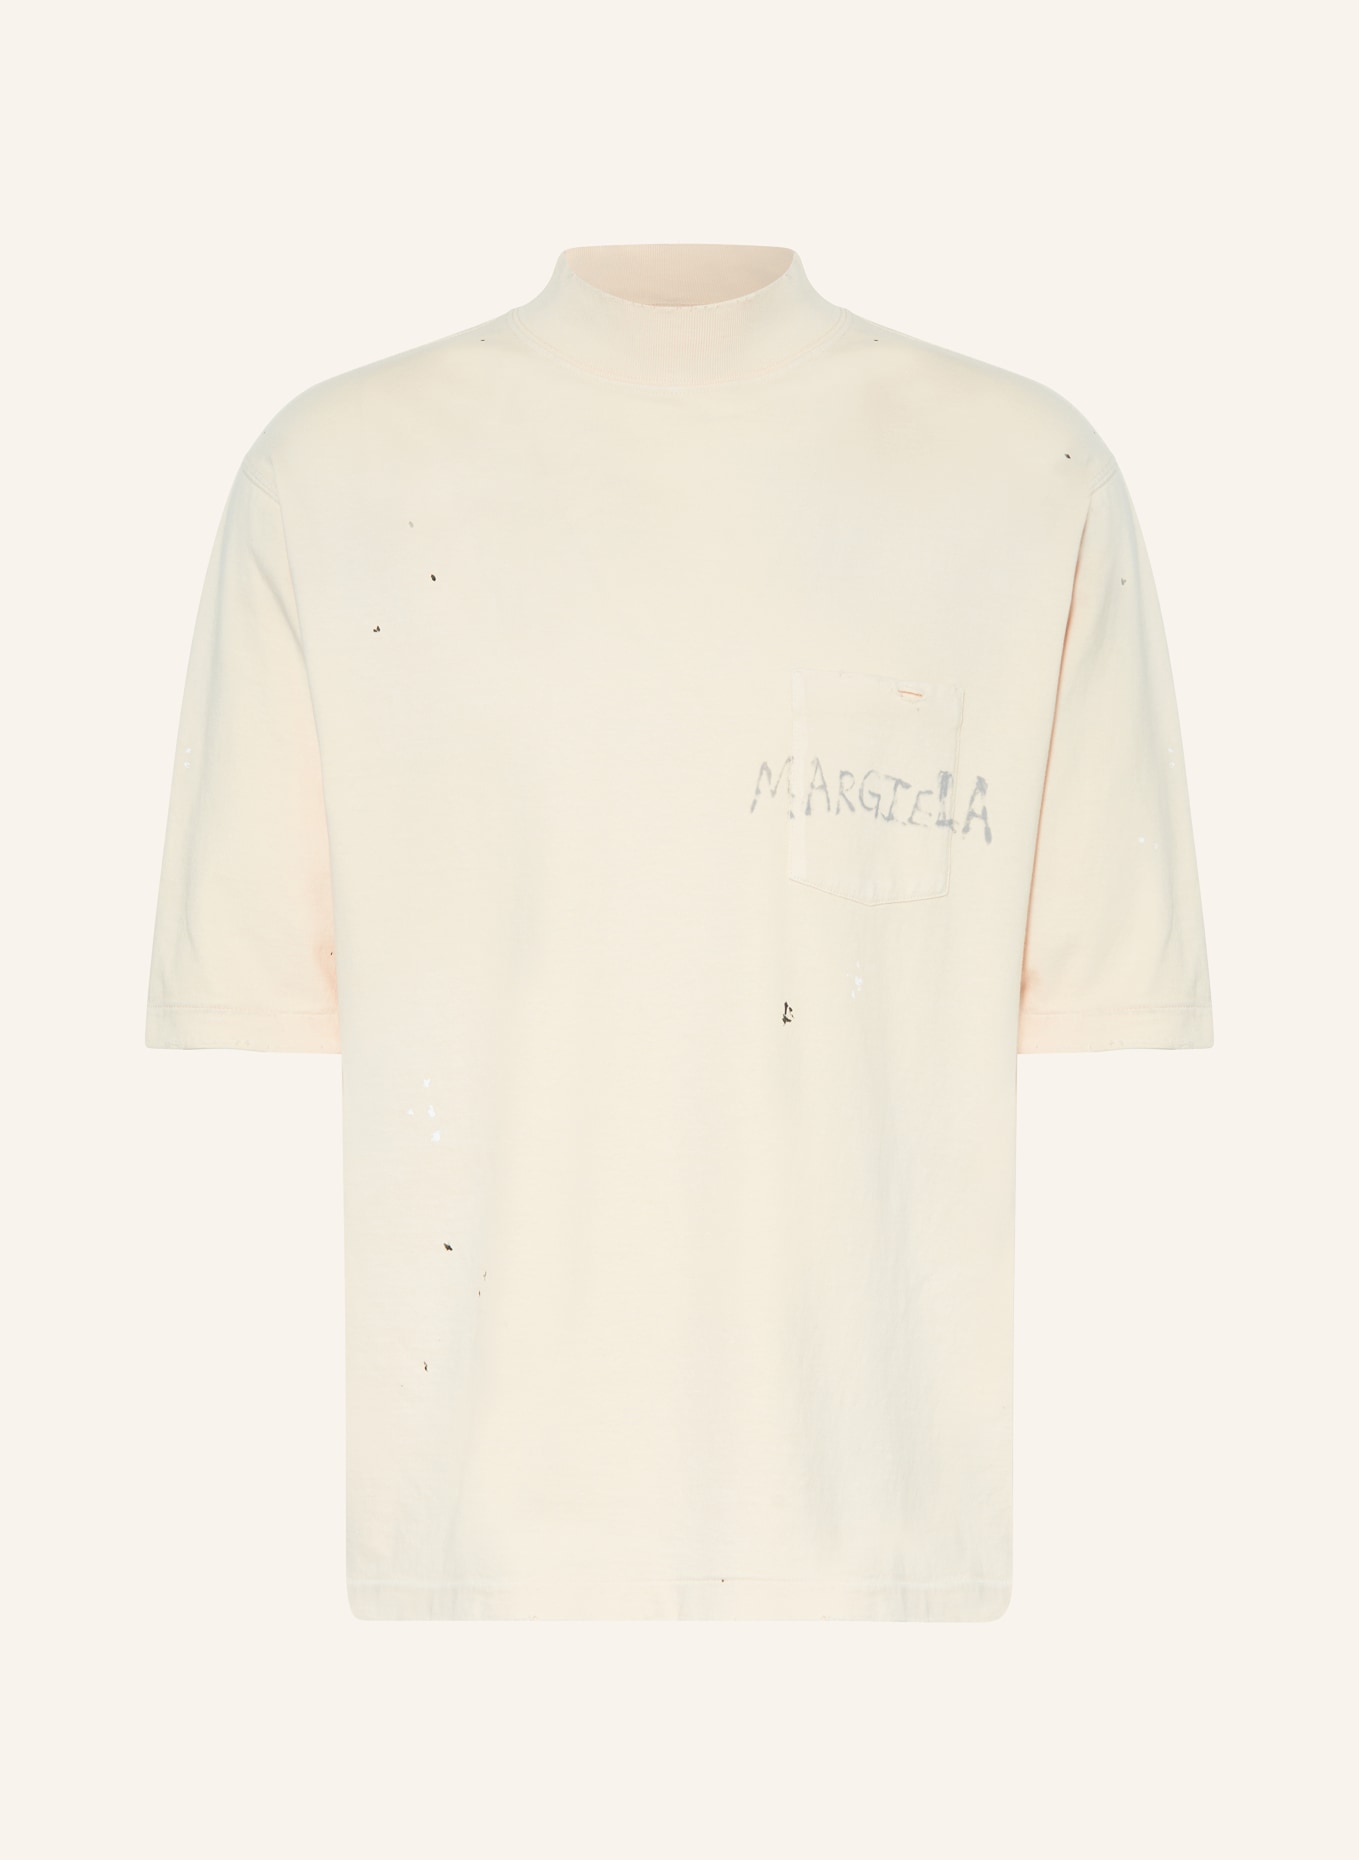 Maison Margiela T-shirt, Color: BEIGE (Image 1)